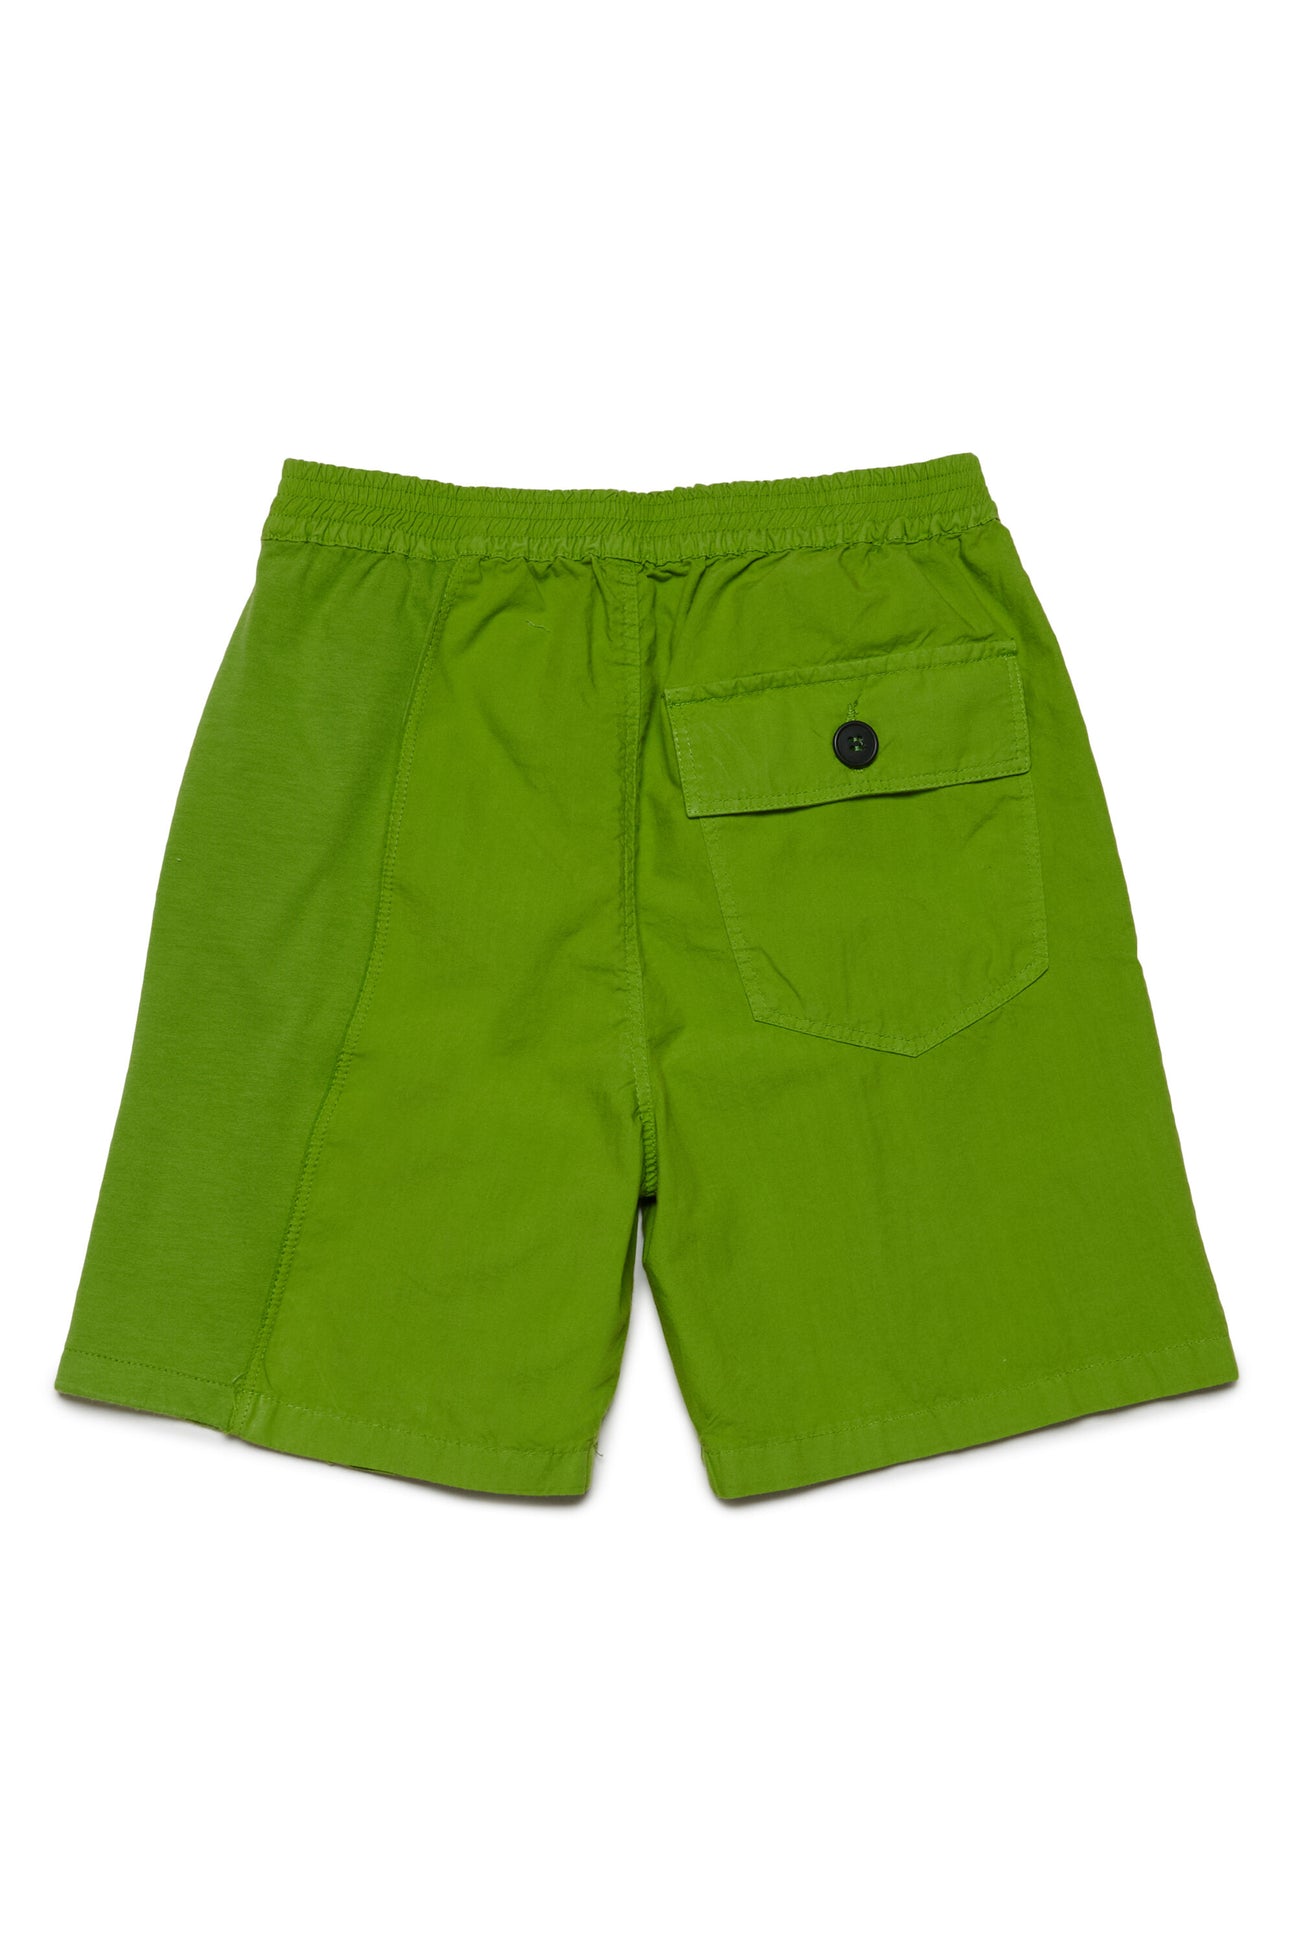 Pantalones cortos en tejido deadstock con logotipo MYAR Pantalones cortos en tejido deadstock con logotipo MYAR